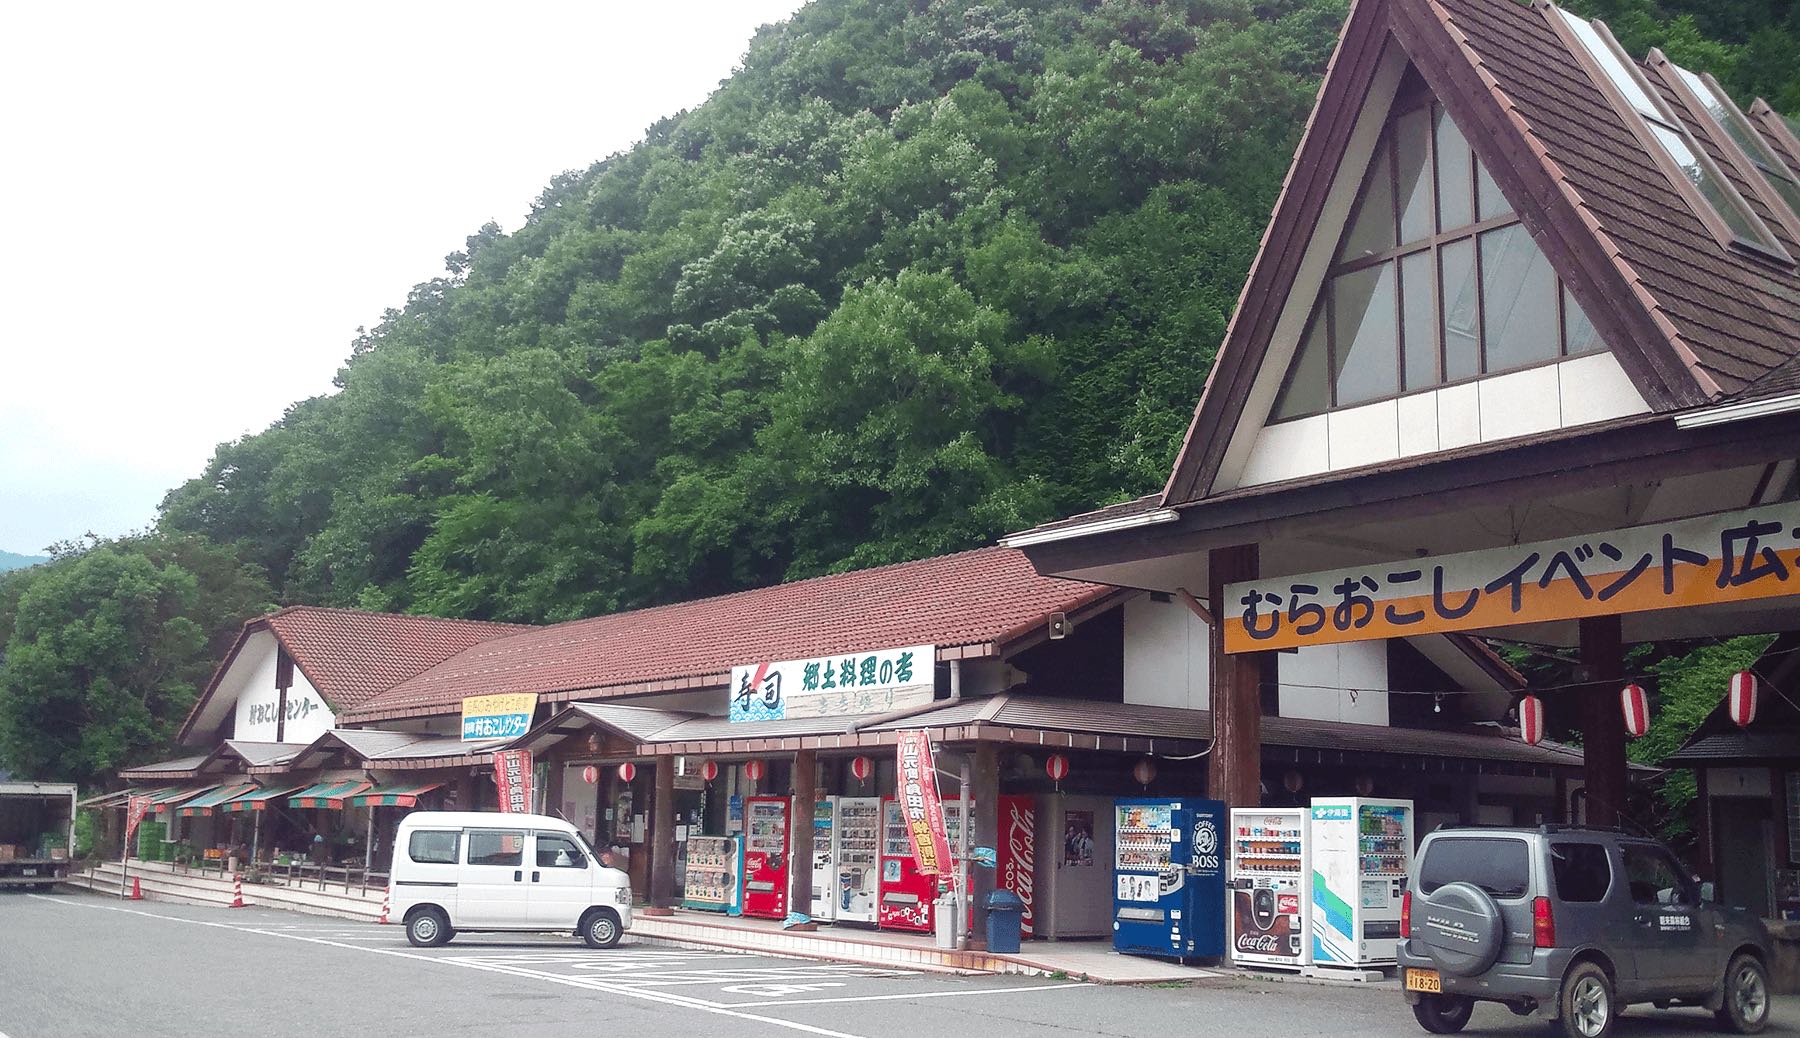 Aire de repos "Au Village" (Michi no Eki Mura Okoshi Center)